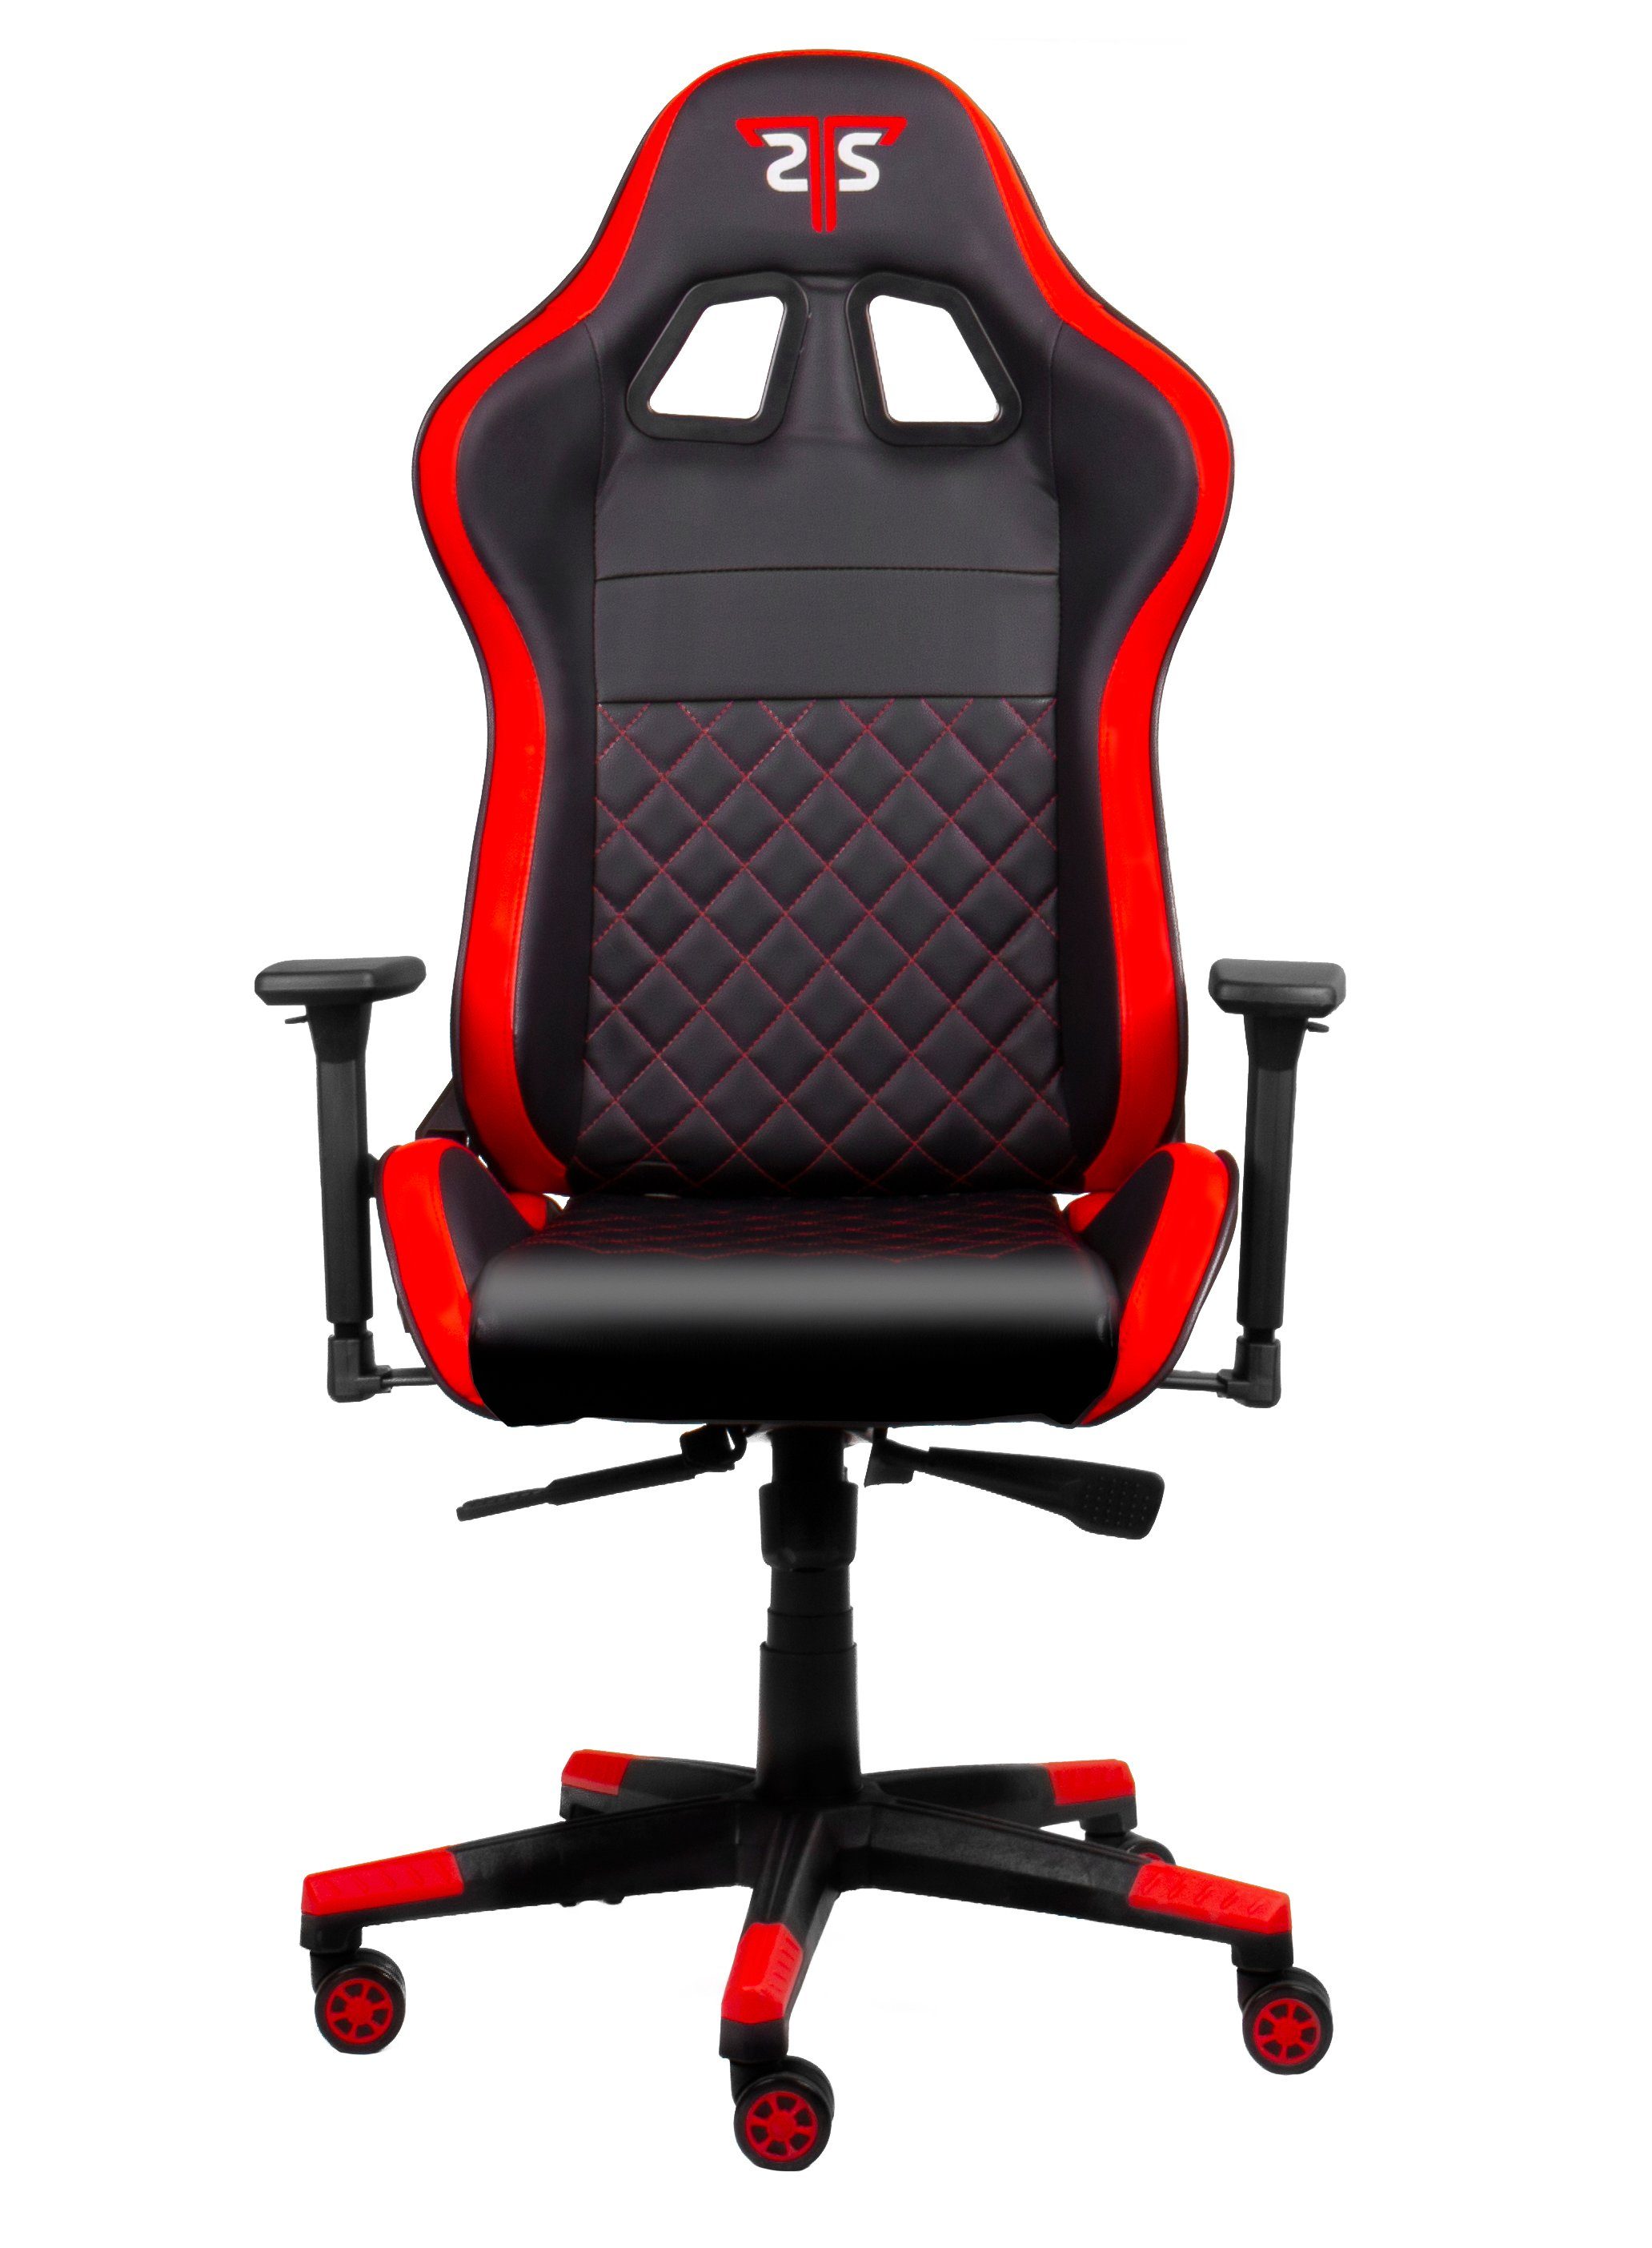 Red Code "Striker Hyrican Gamingstuhl,Schreibtischstuhl ergonomischer XL" Gaming-Stuhl